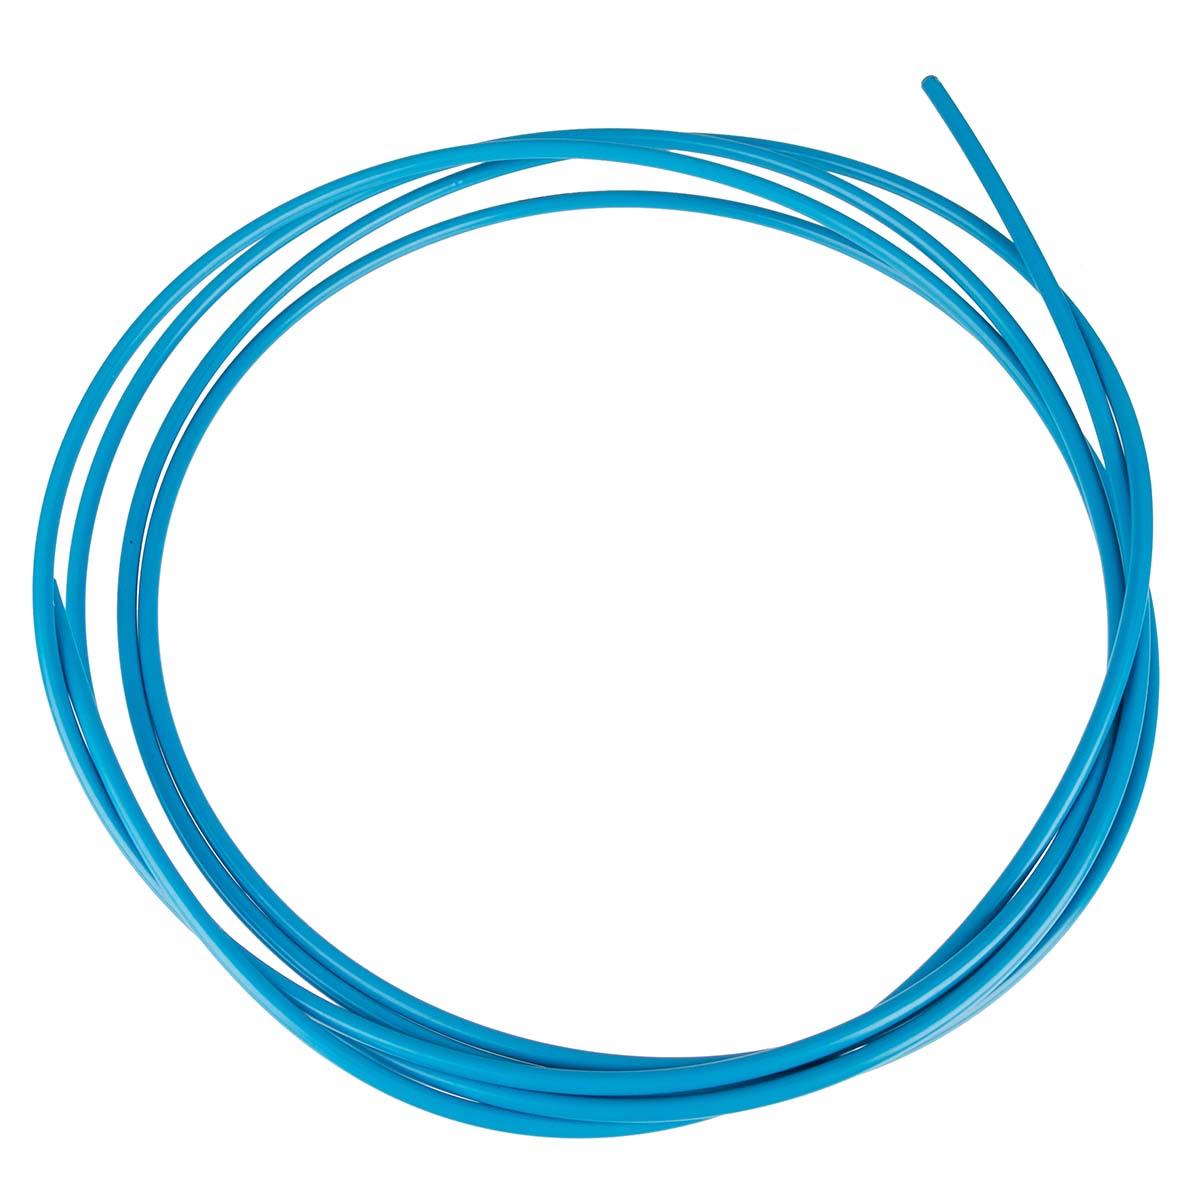 Capgo Cable Systems Gaine pour Câble Dérailleur Blue Line Bleu clair